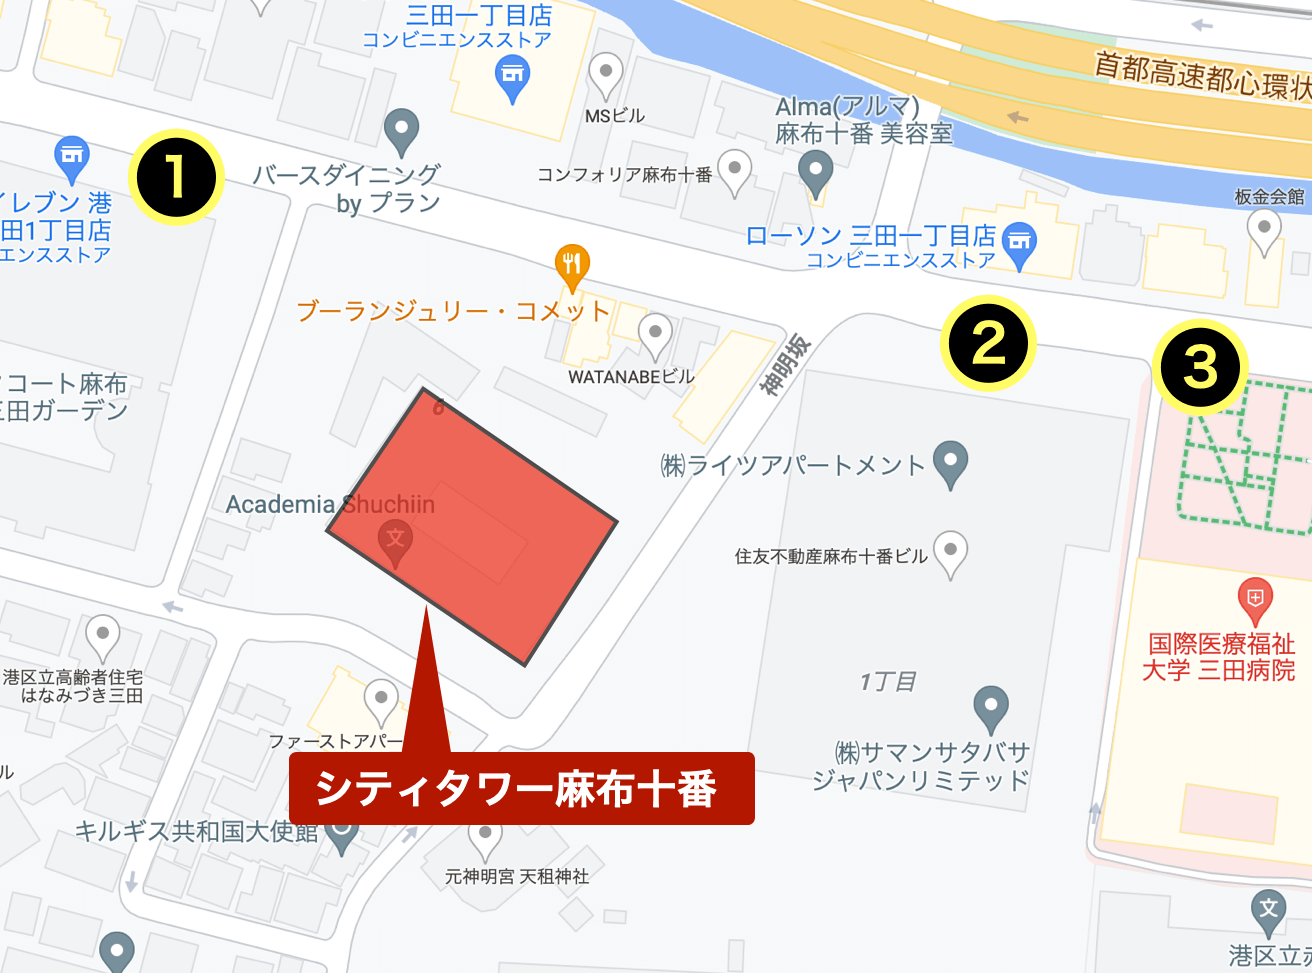 バス停を示したGoogleマップ